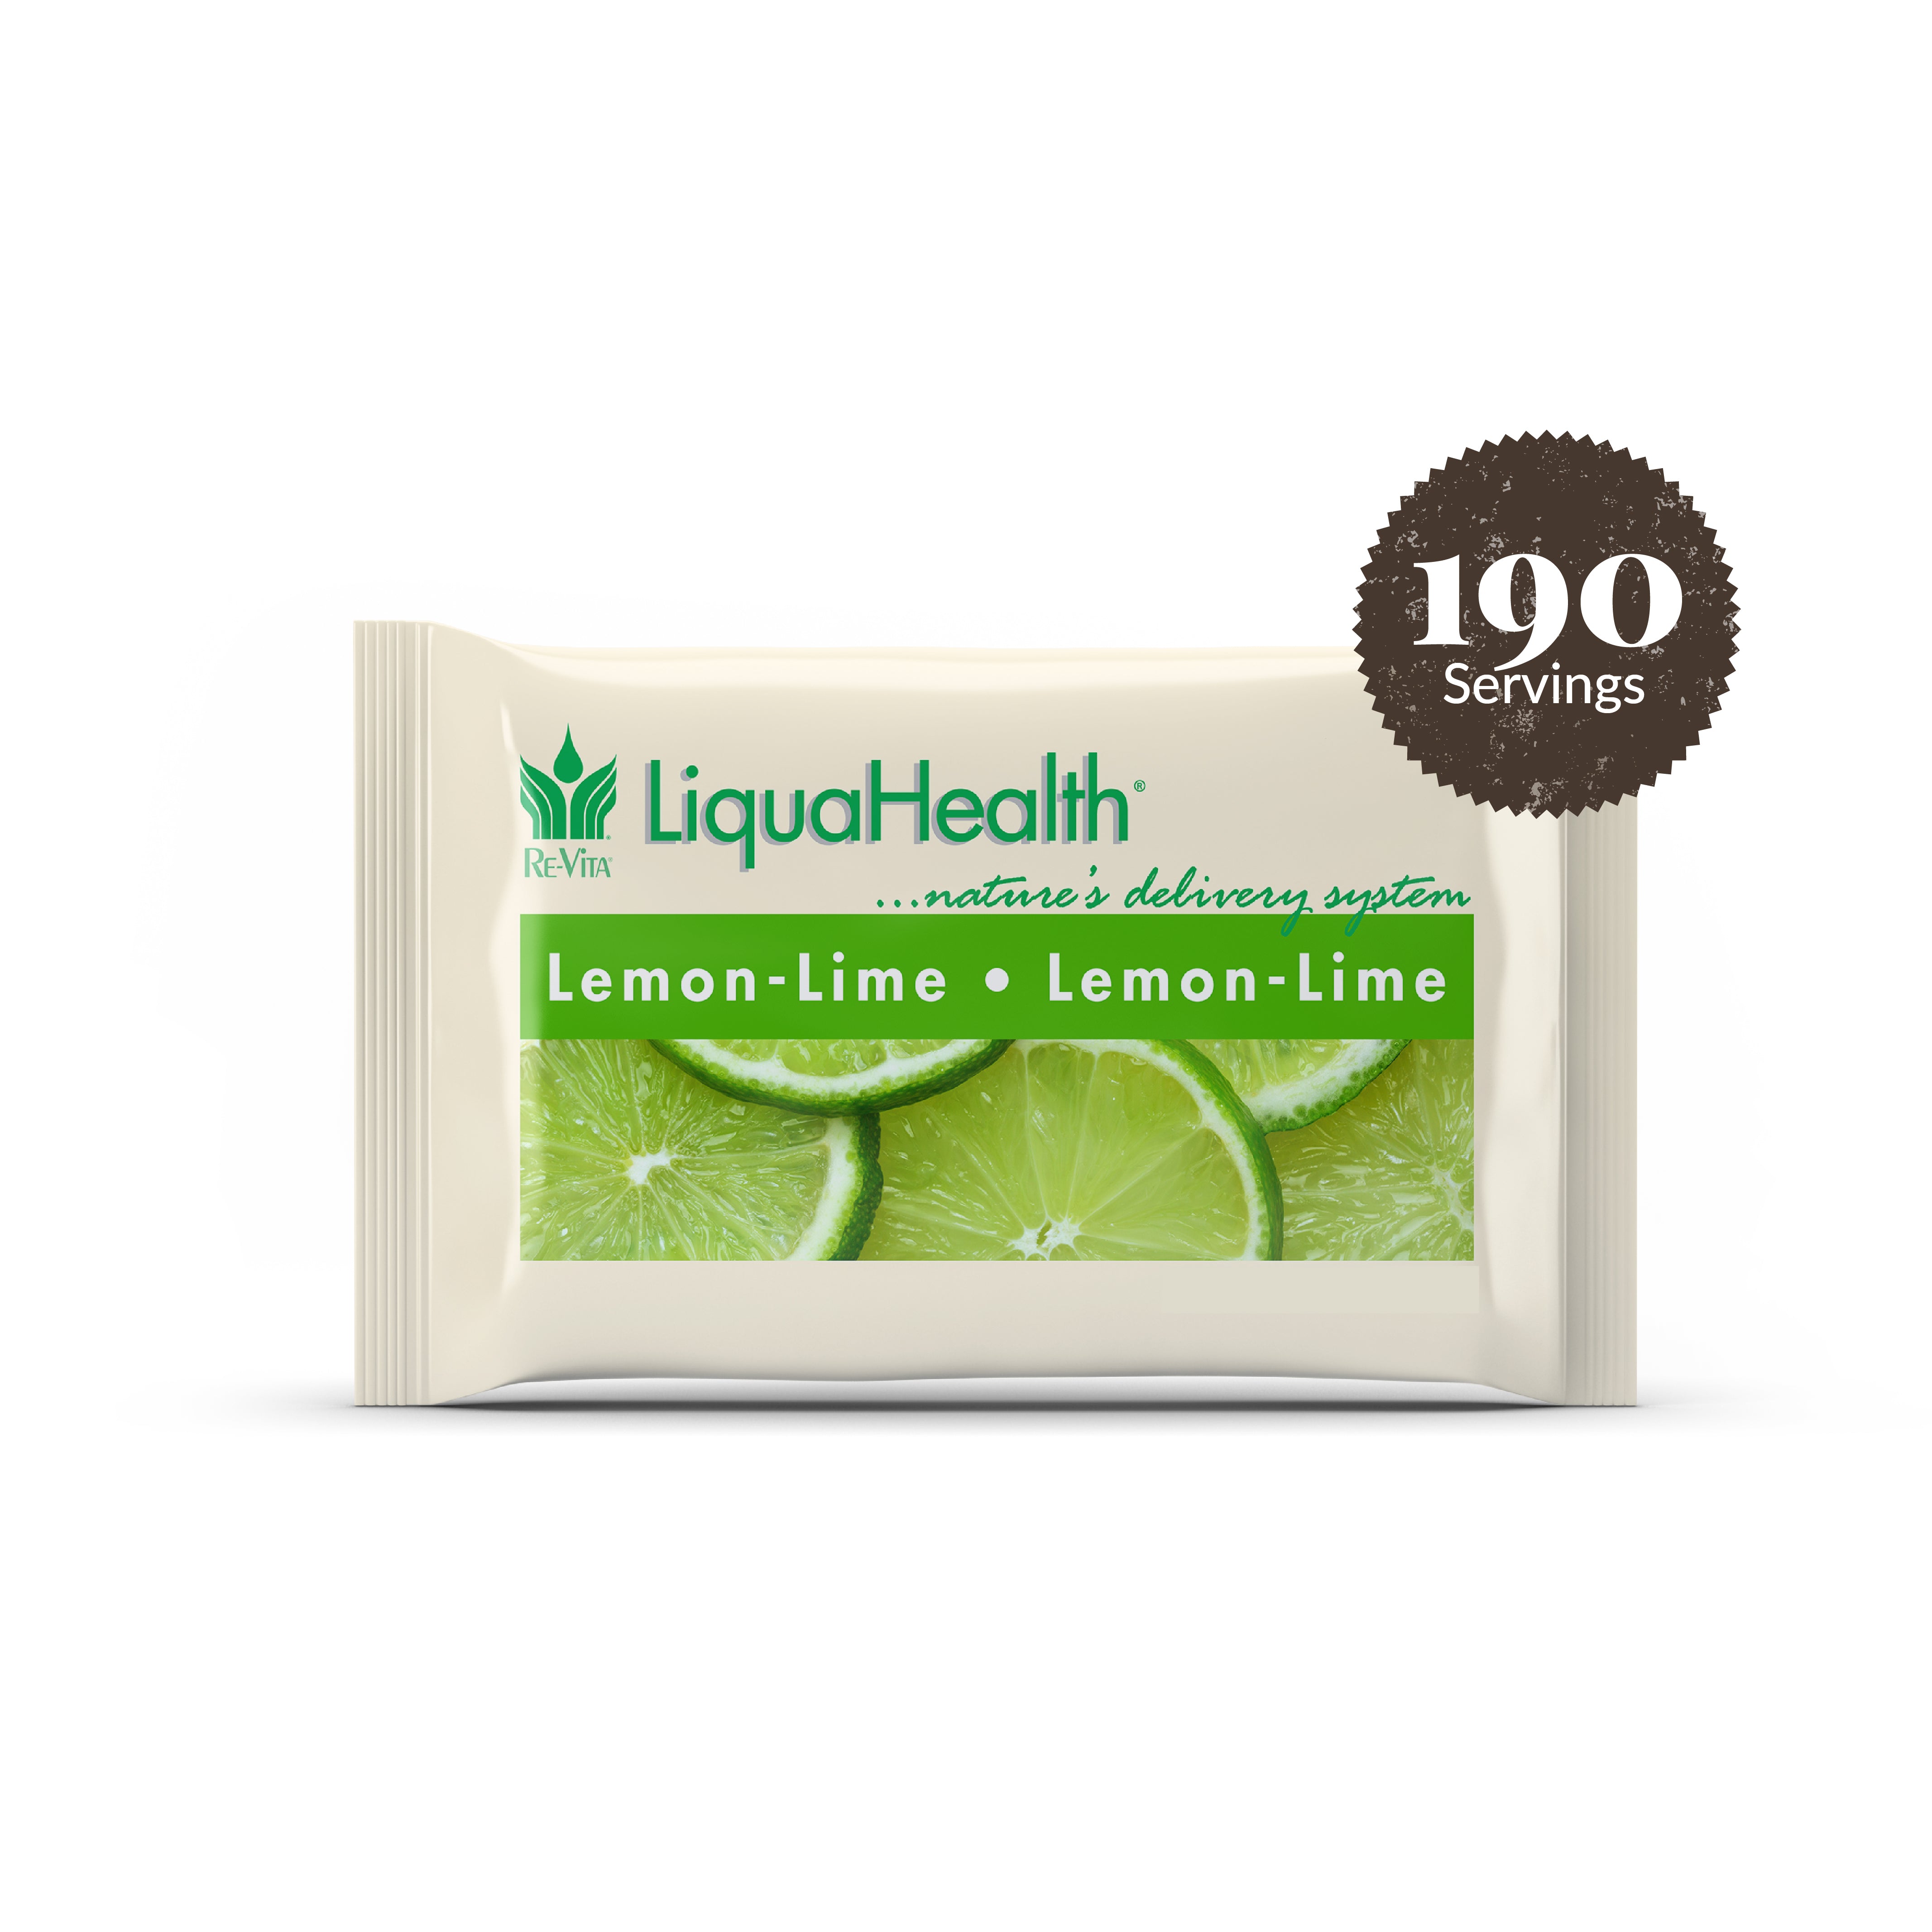 Lemon-Lime Liqua Health Smart Pack 190 Servings